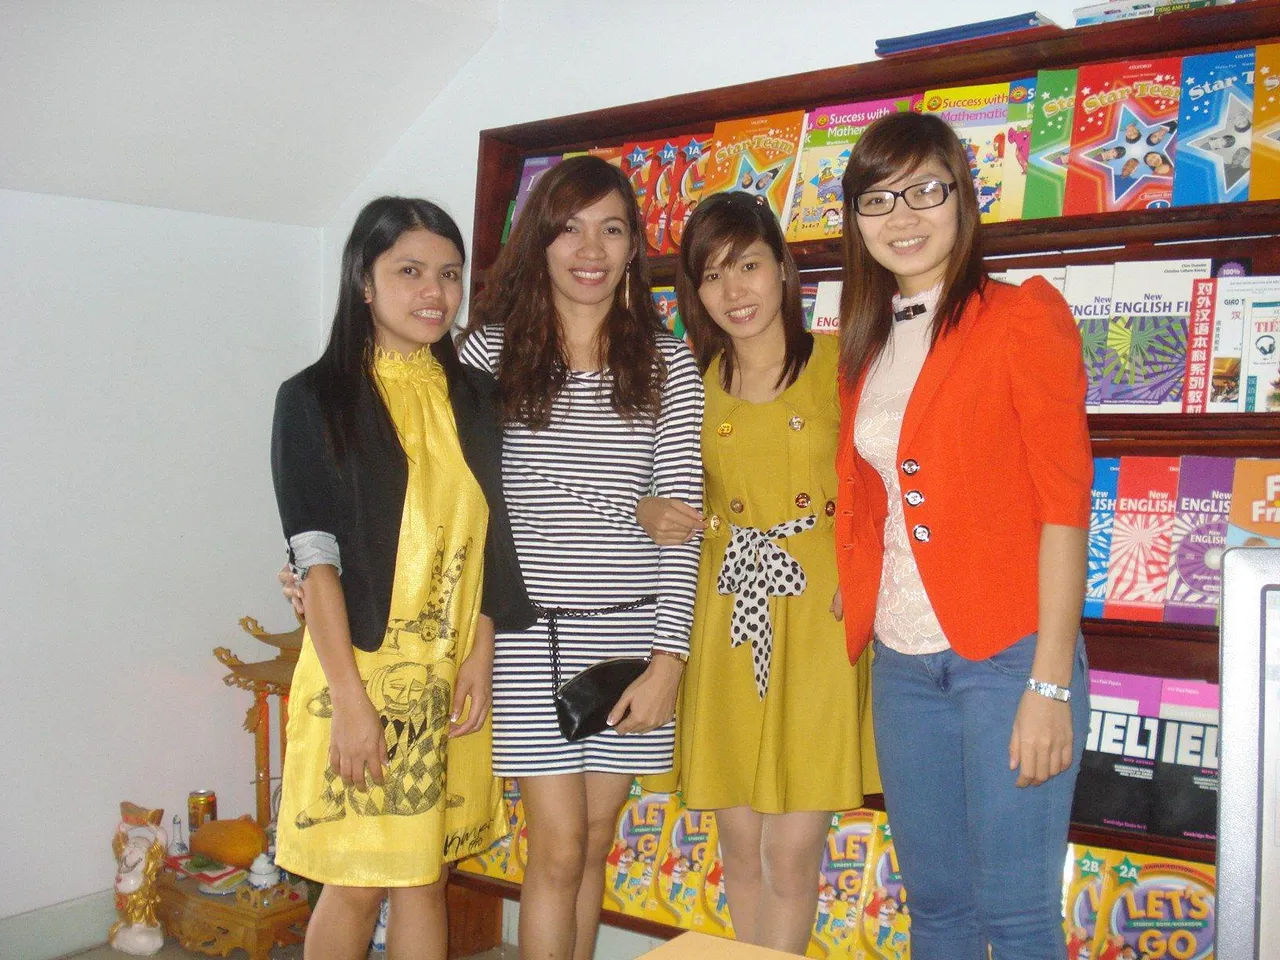 2012 Maybe - New Star Bac Ninh - Girls - Books 10478551_1464888970459522_2537282882388750682_o.jpg